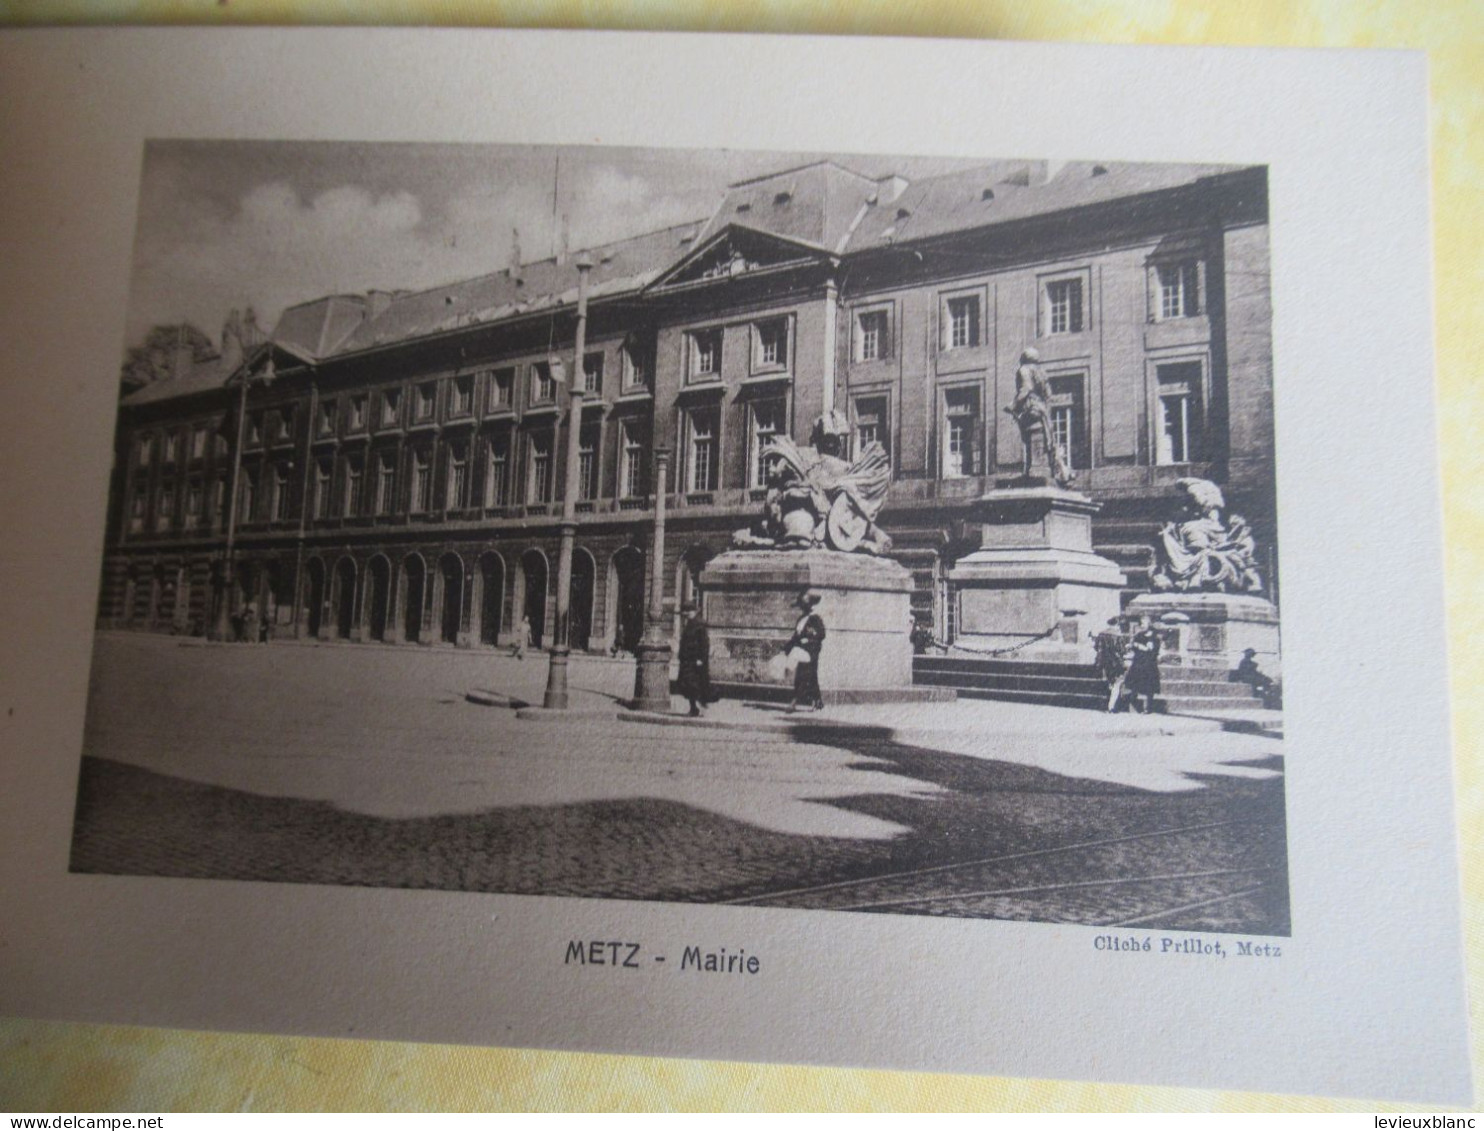 Carnet souvenir 17 vues de METZ/offert par la Maison FABRE/grainetier/METZ (Moselle) /rue Mazelle/vers  1920-30   PGC552